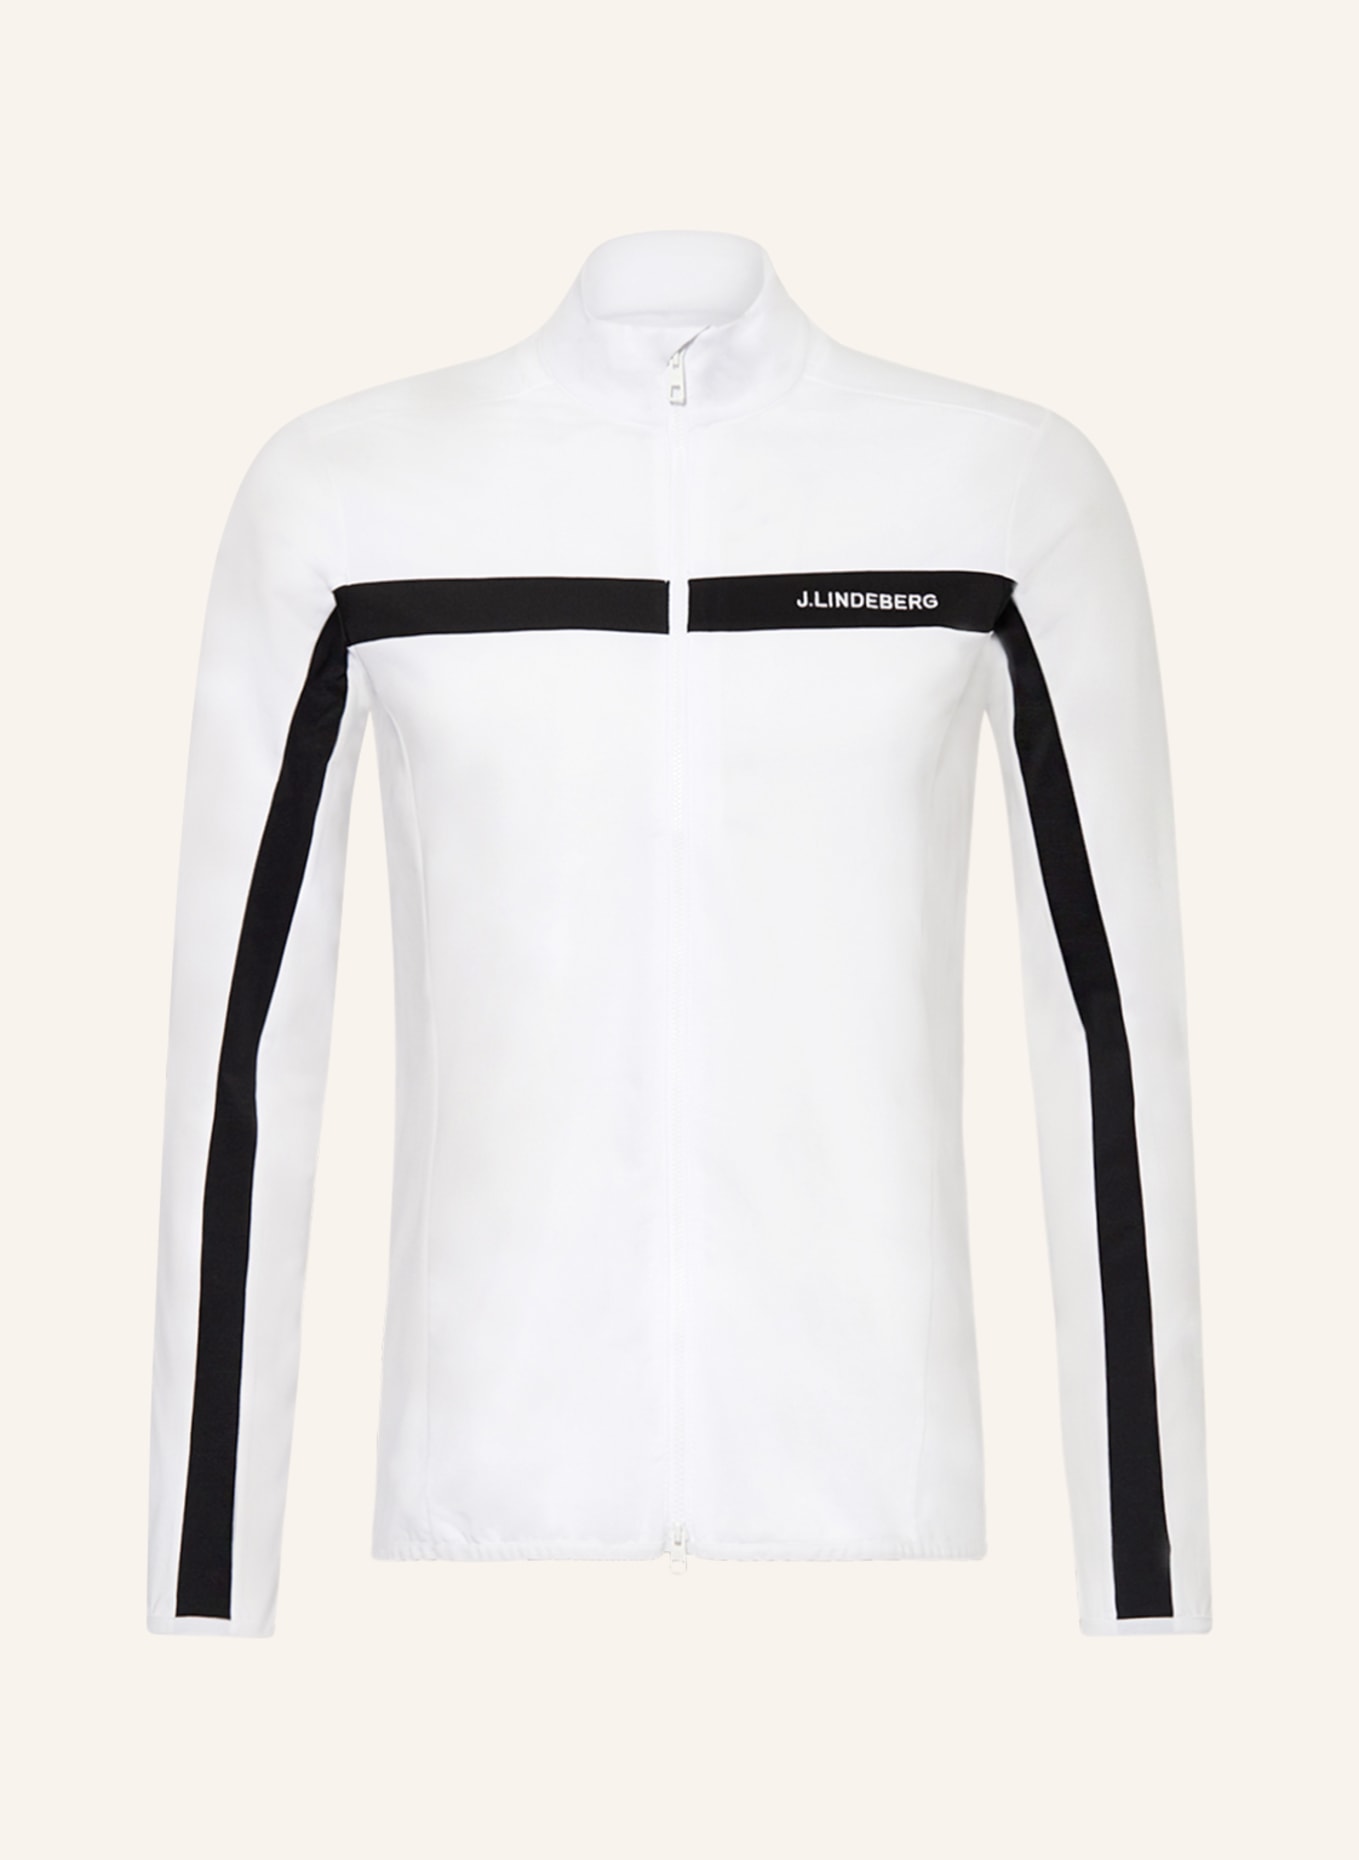 J.LINDEBERG Mid-layer jacket, Color: WHITE/ BLACK (Image 1)